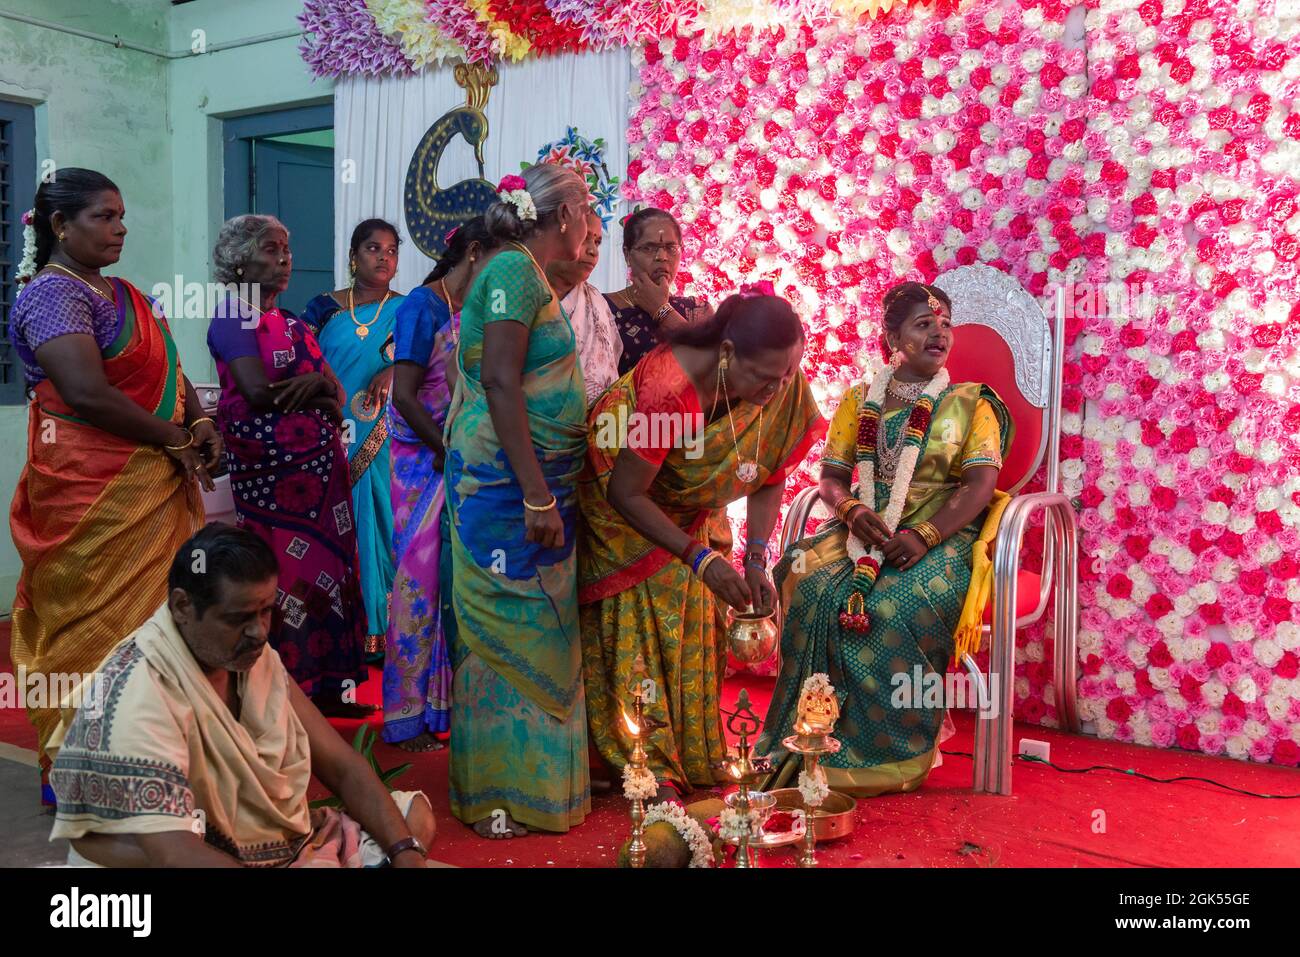 Tamil Nadu, Inde - 12 septembre 2021 : le Ritushuddhi ou Ritu Kala Samskara est la cérémonie qui célèbre la transition d'une jeune fille à la féminité. Ceci Banque D'Images